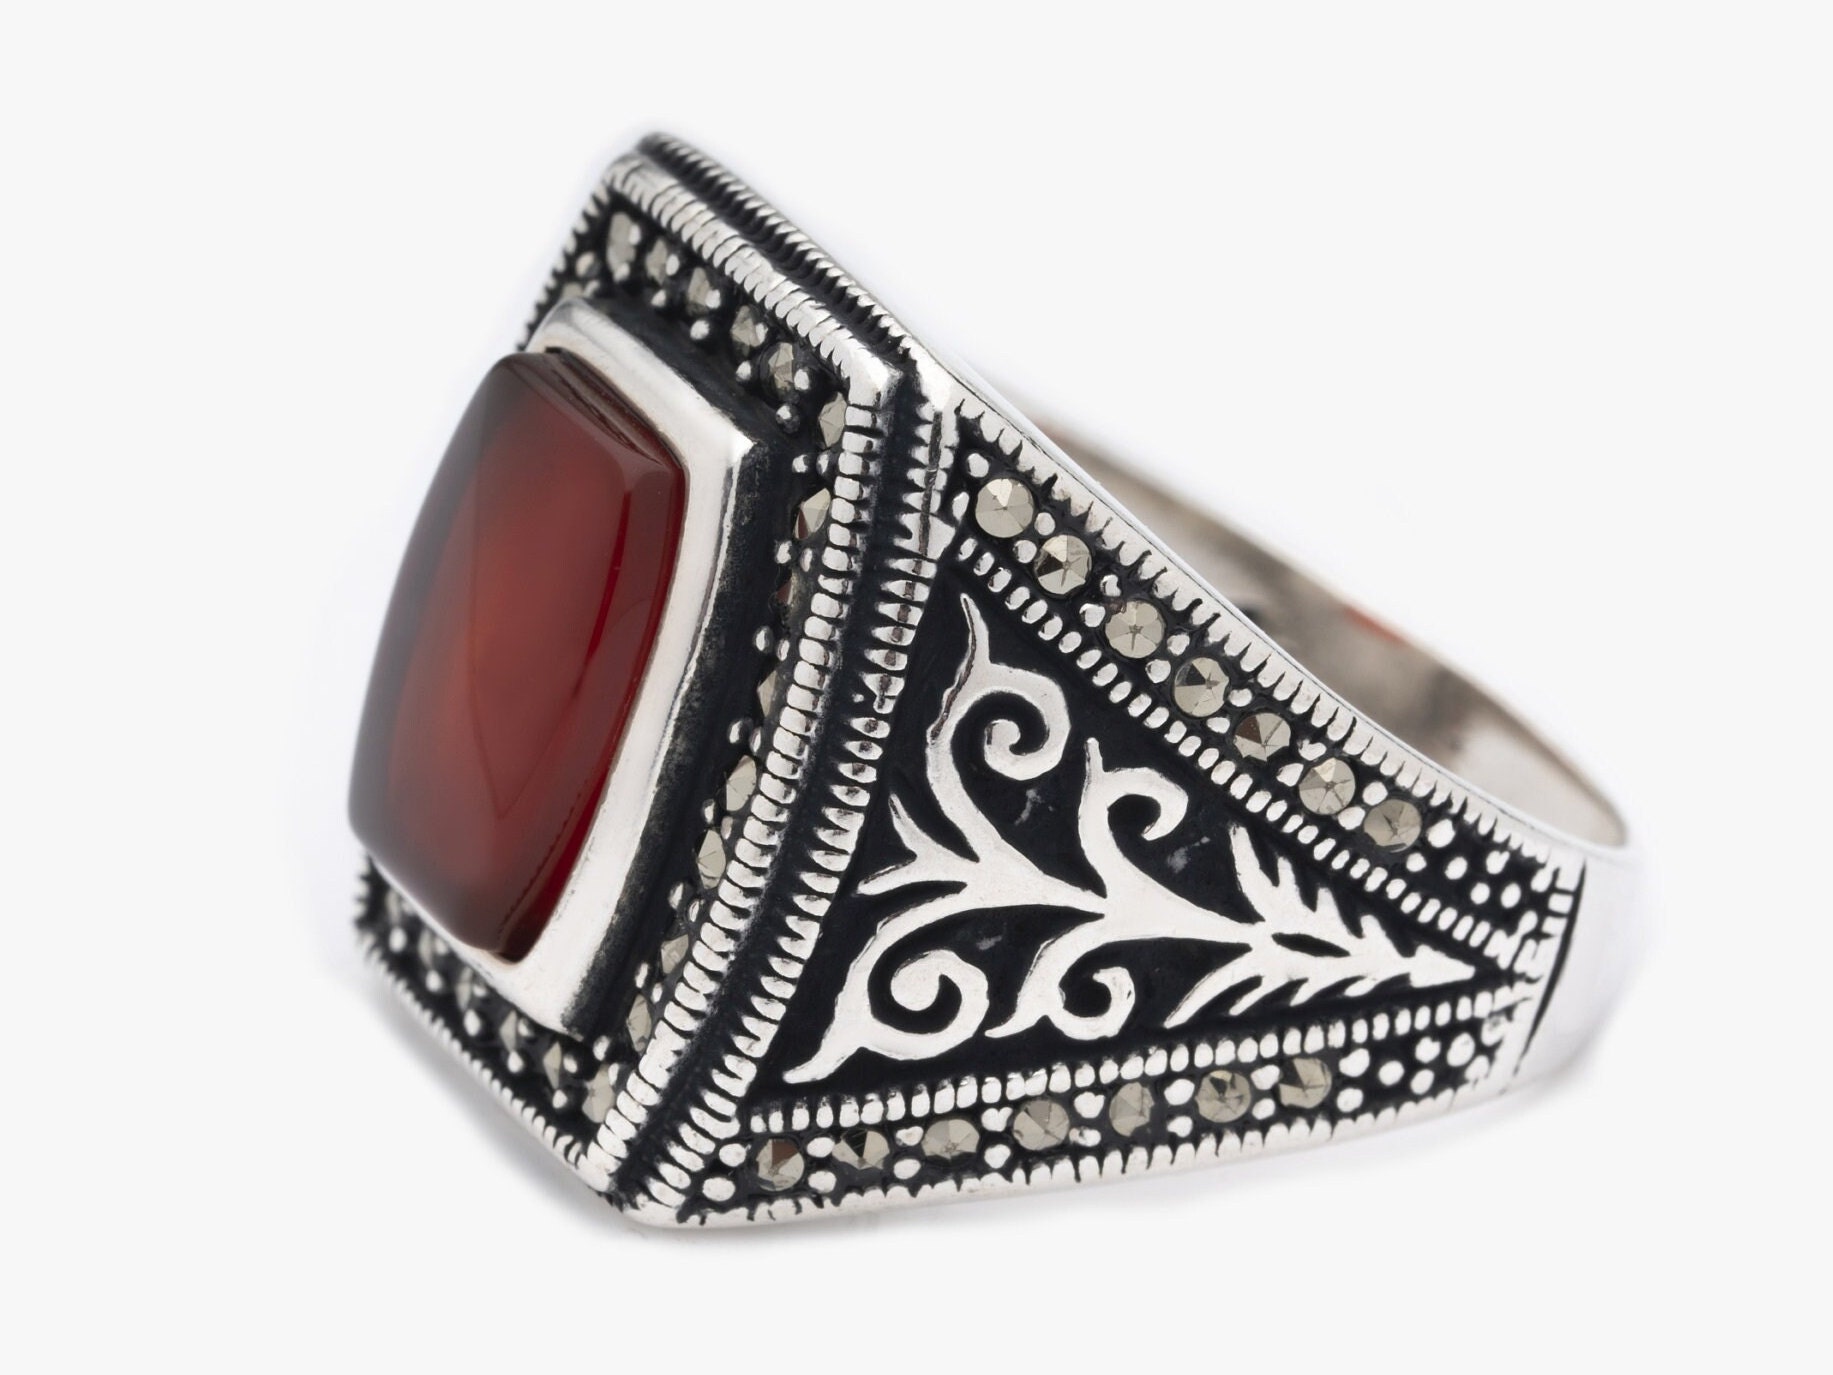 Roter Achat Ring/Multi Marcasite Stein Schmuck Moderner Design Herren Statement Silber Geschenk Für Glück von LordenSilver